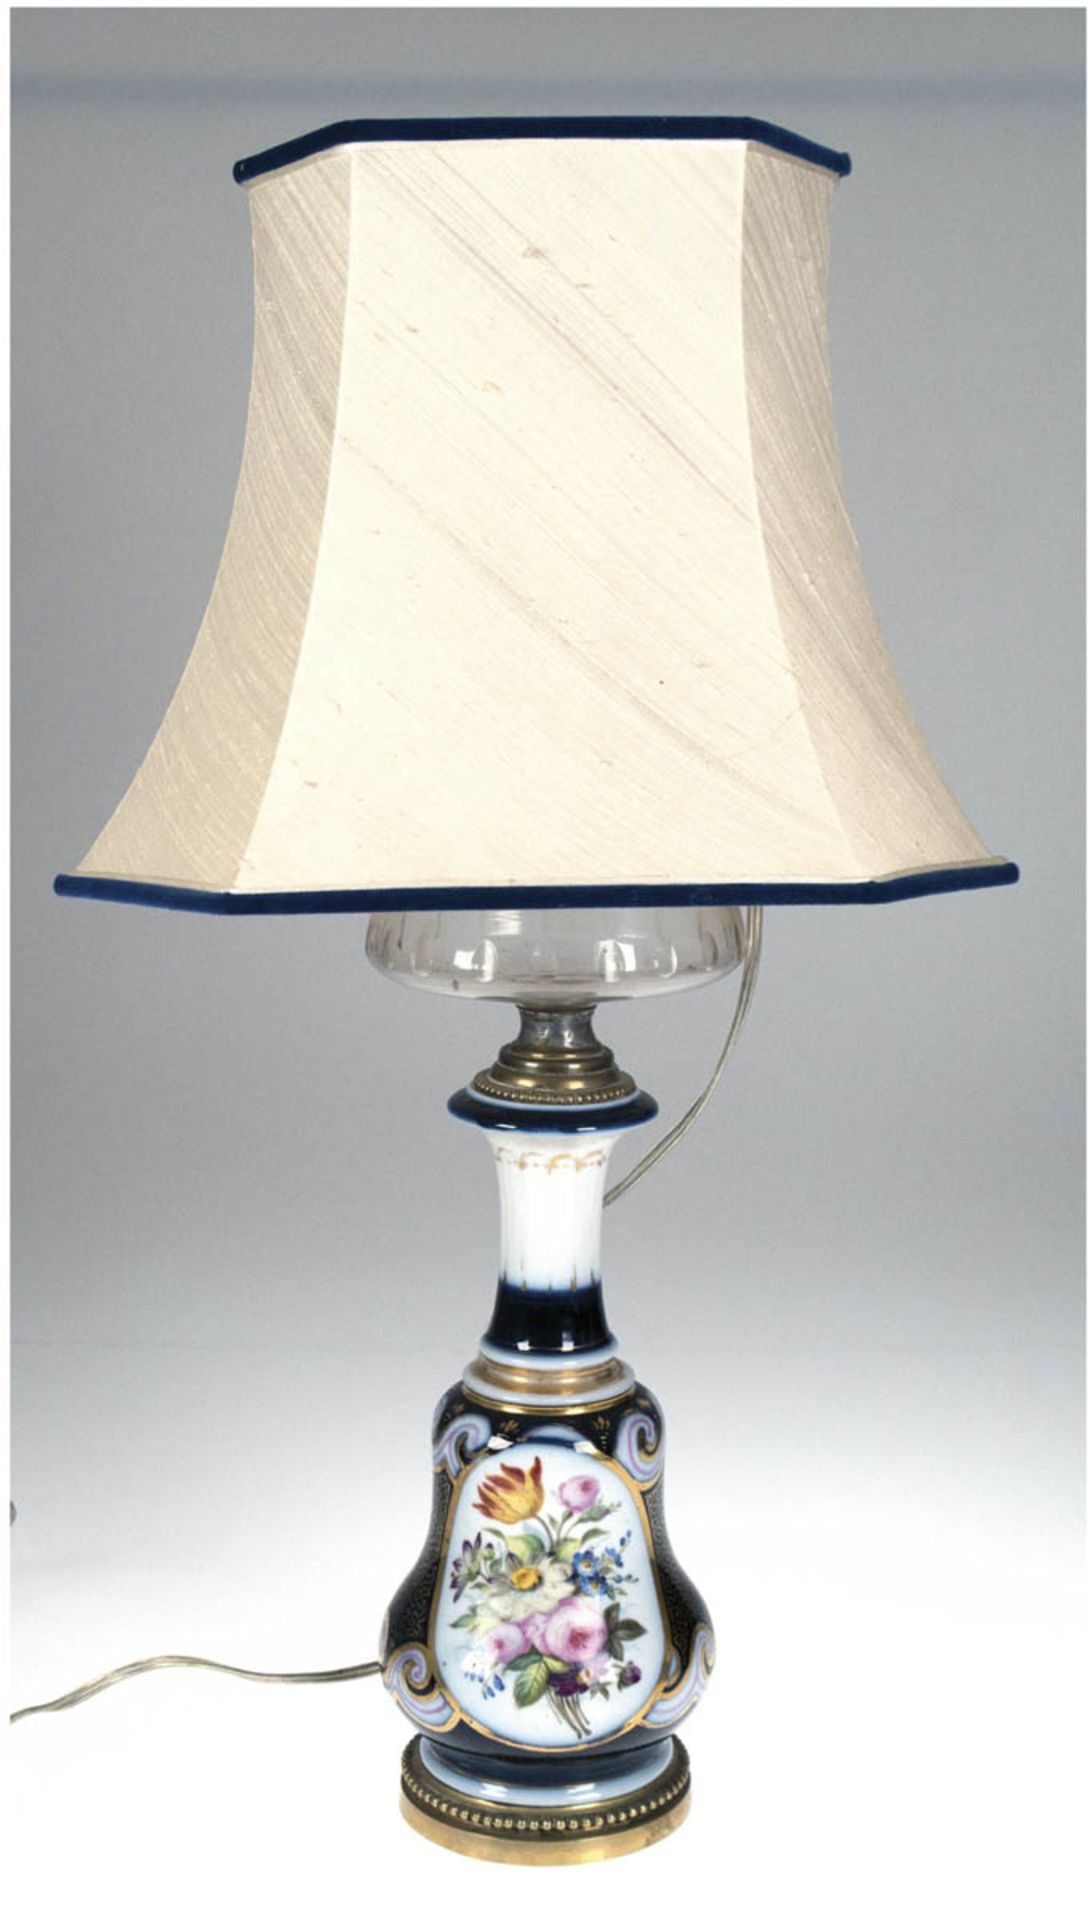 Tischlampe in Form einer Petroleumlampe, Böhmen um 1860, balusterförmiger Lampenfuß